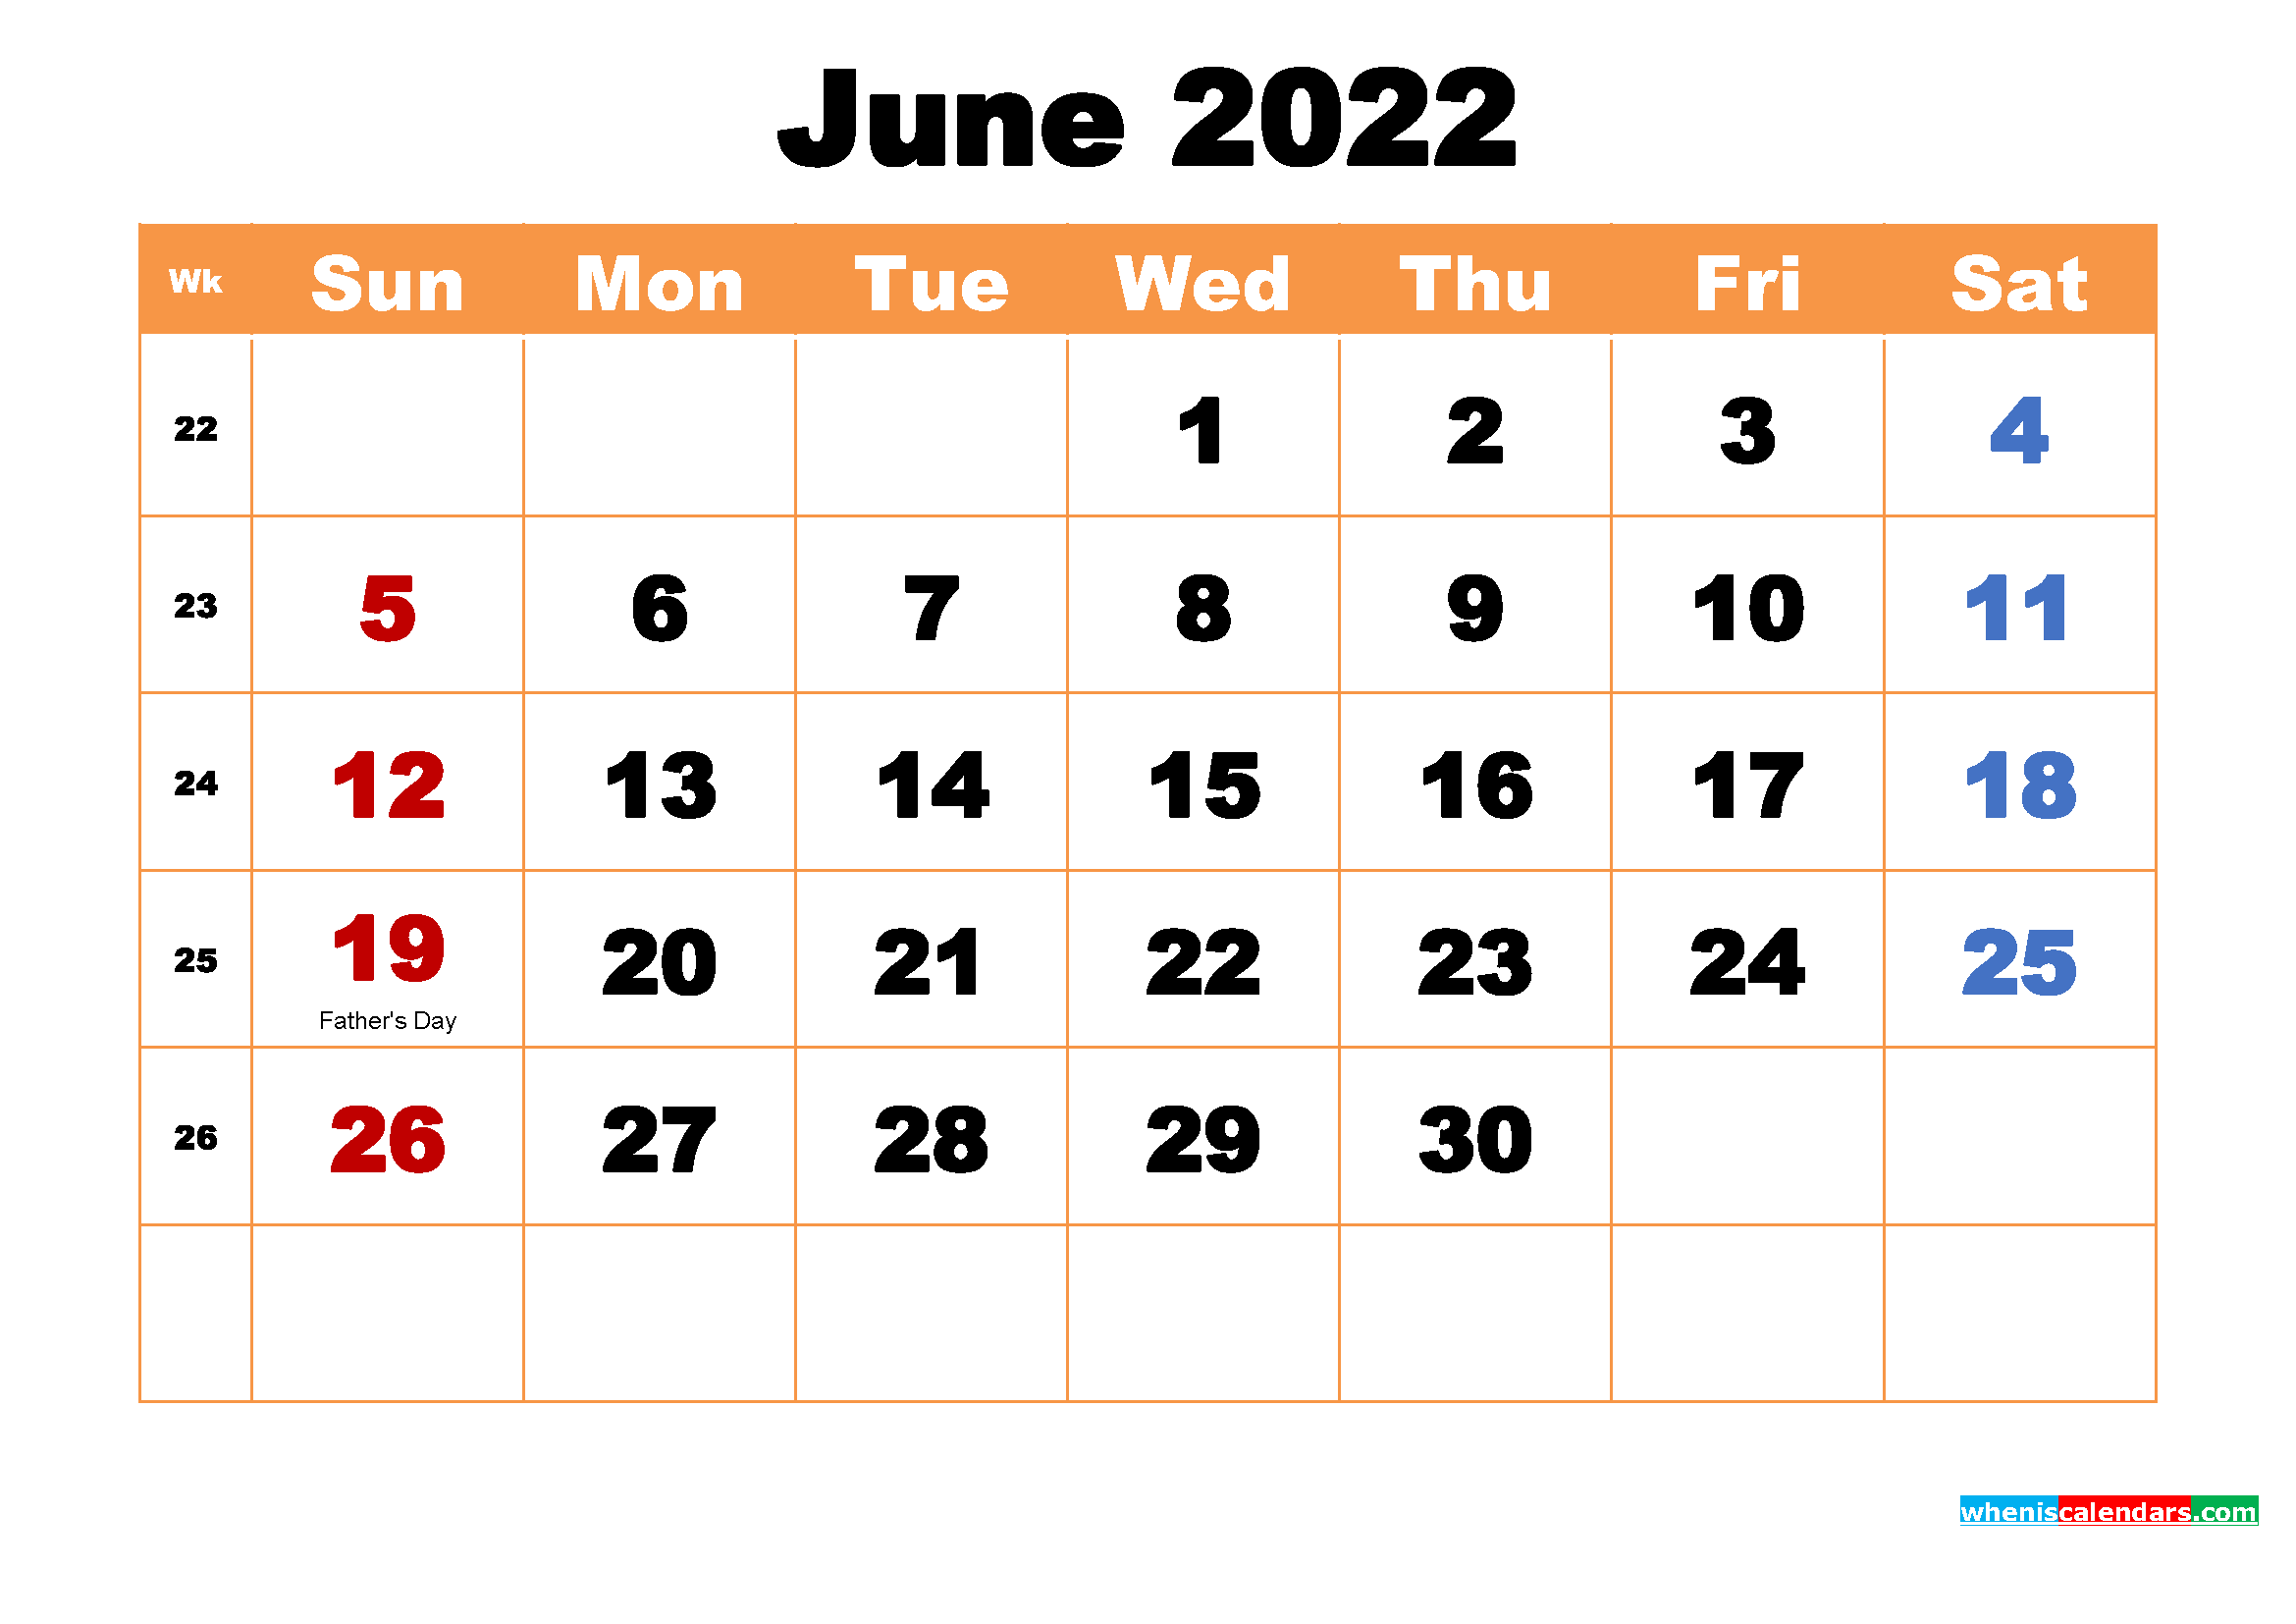 June 2022 Calendar Wallpaper High Resolution